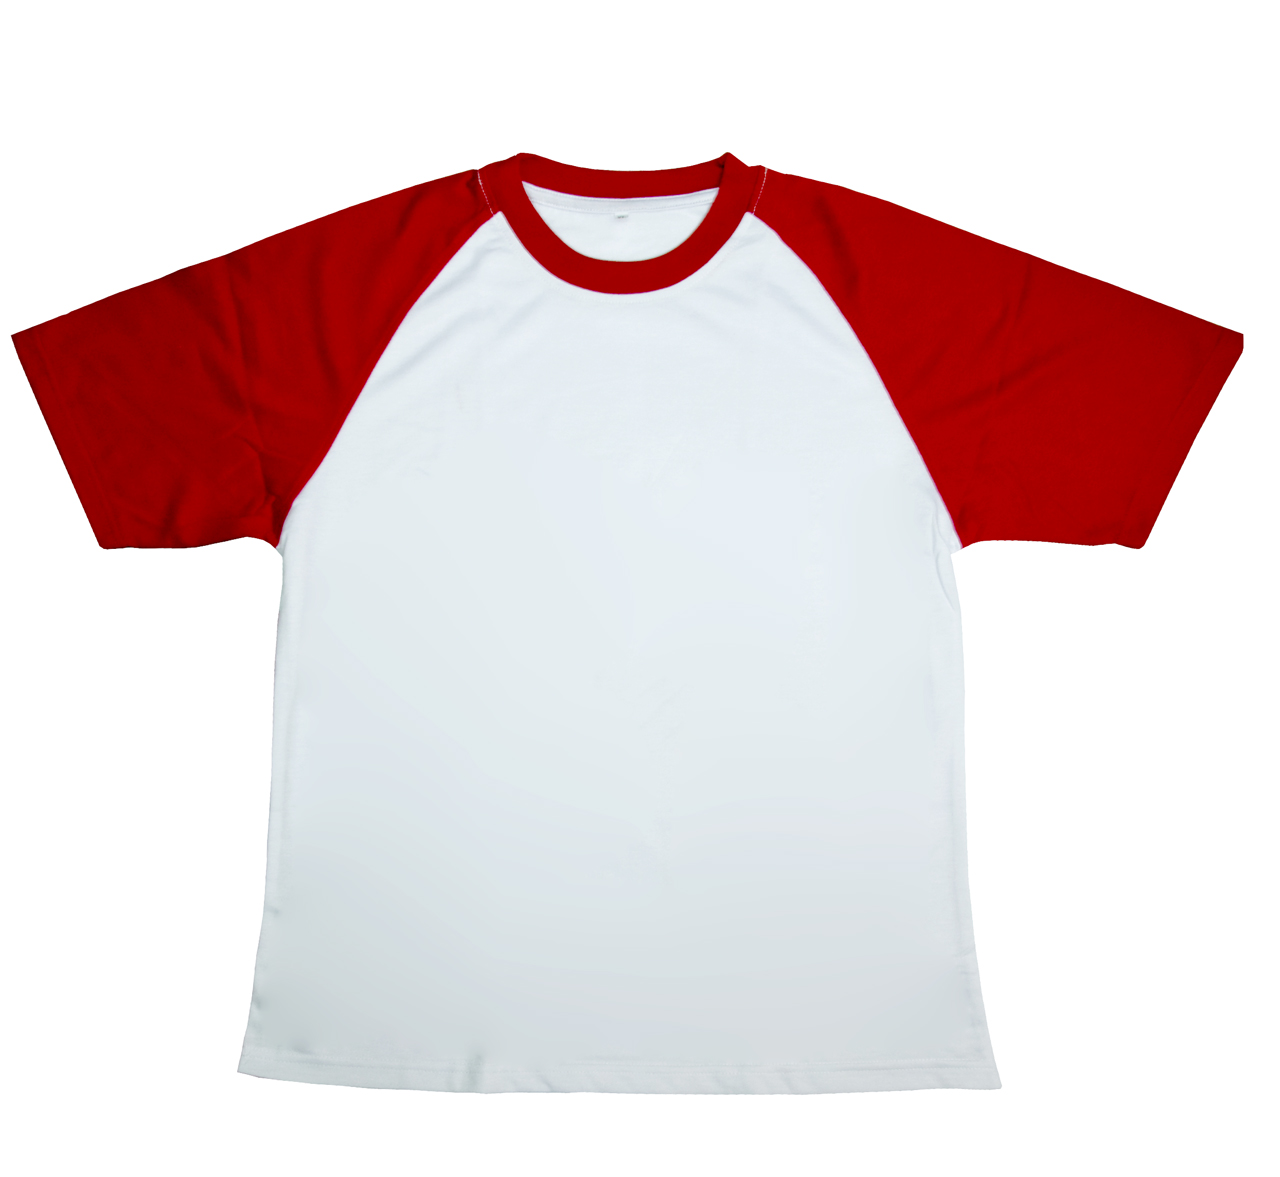 Купить футболку вб. Футболка с цветными рукавами. Белая футболка с цветными рукавами. Футболки с цветными рукавами для сублимации. Белая футболка с красными рукавами.